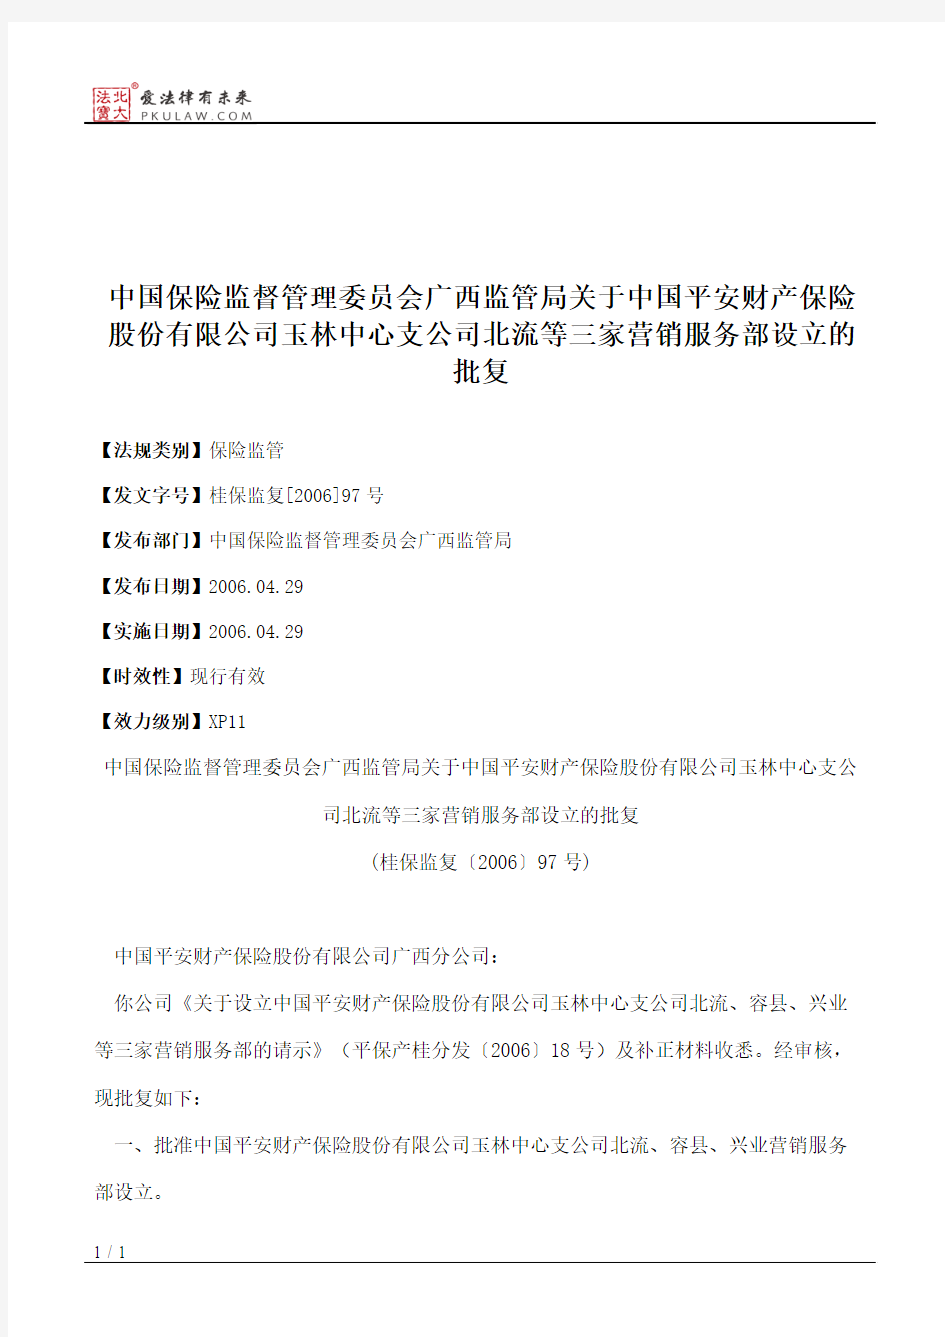 中国保险监督管理委员会广西监管局关于中国平安财产保险股份有限